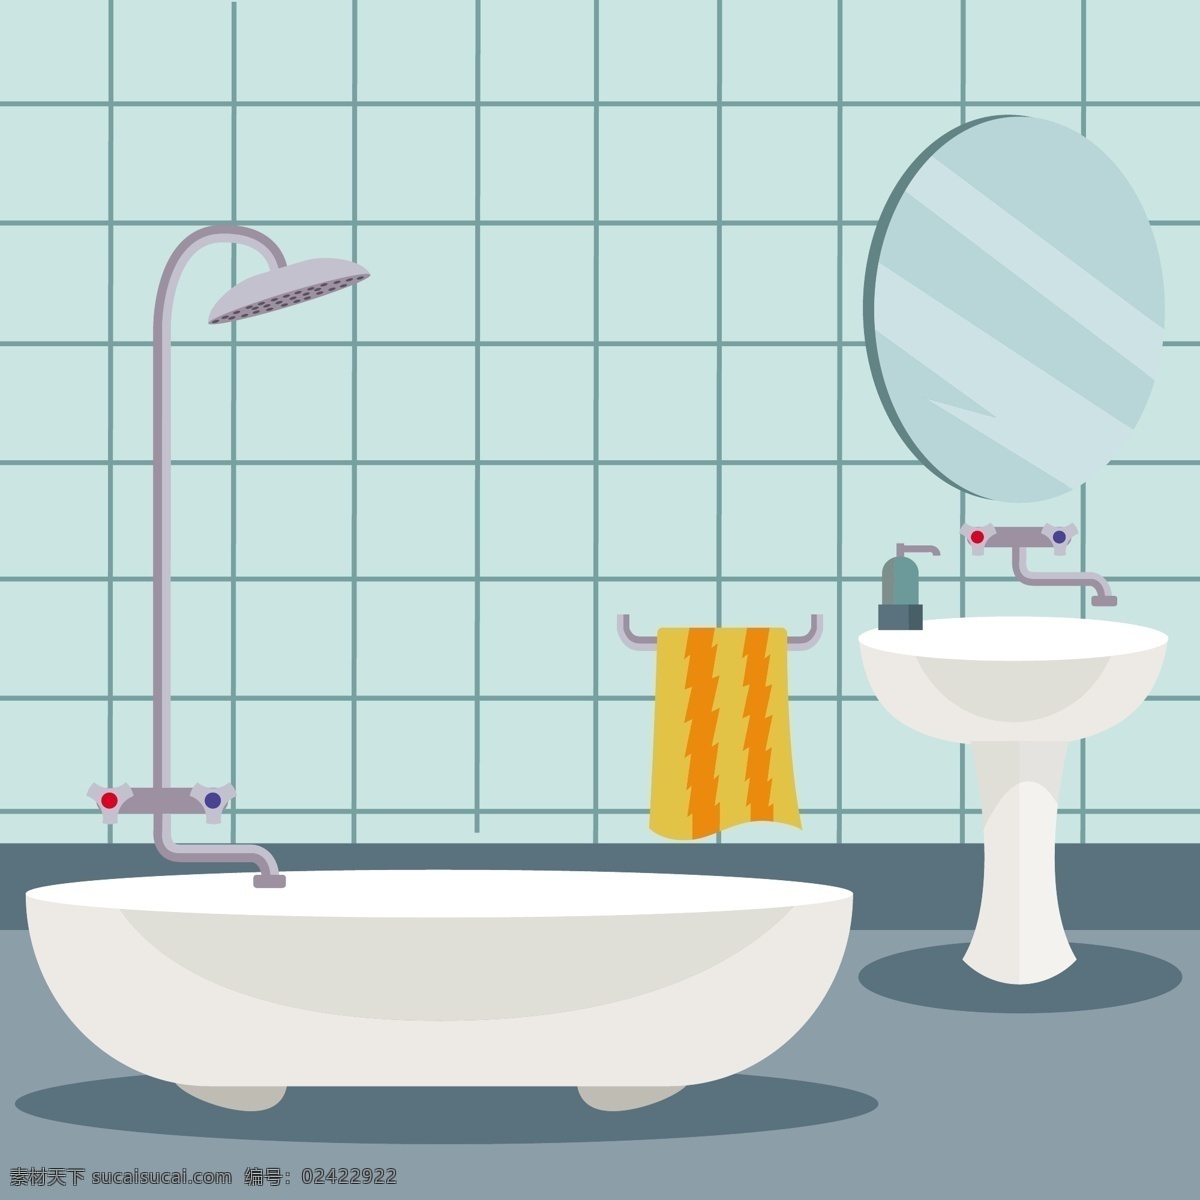 浴室背景设计 背景 墙纸 颜色 丰富多彩 浴室 镜子 色彩 淋浴 浴缸 五颜六色 背景颜色 水槽 彩色的 洗脸盆